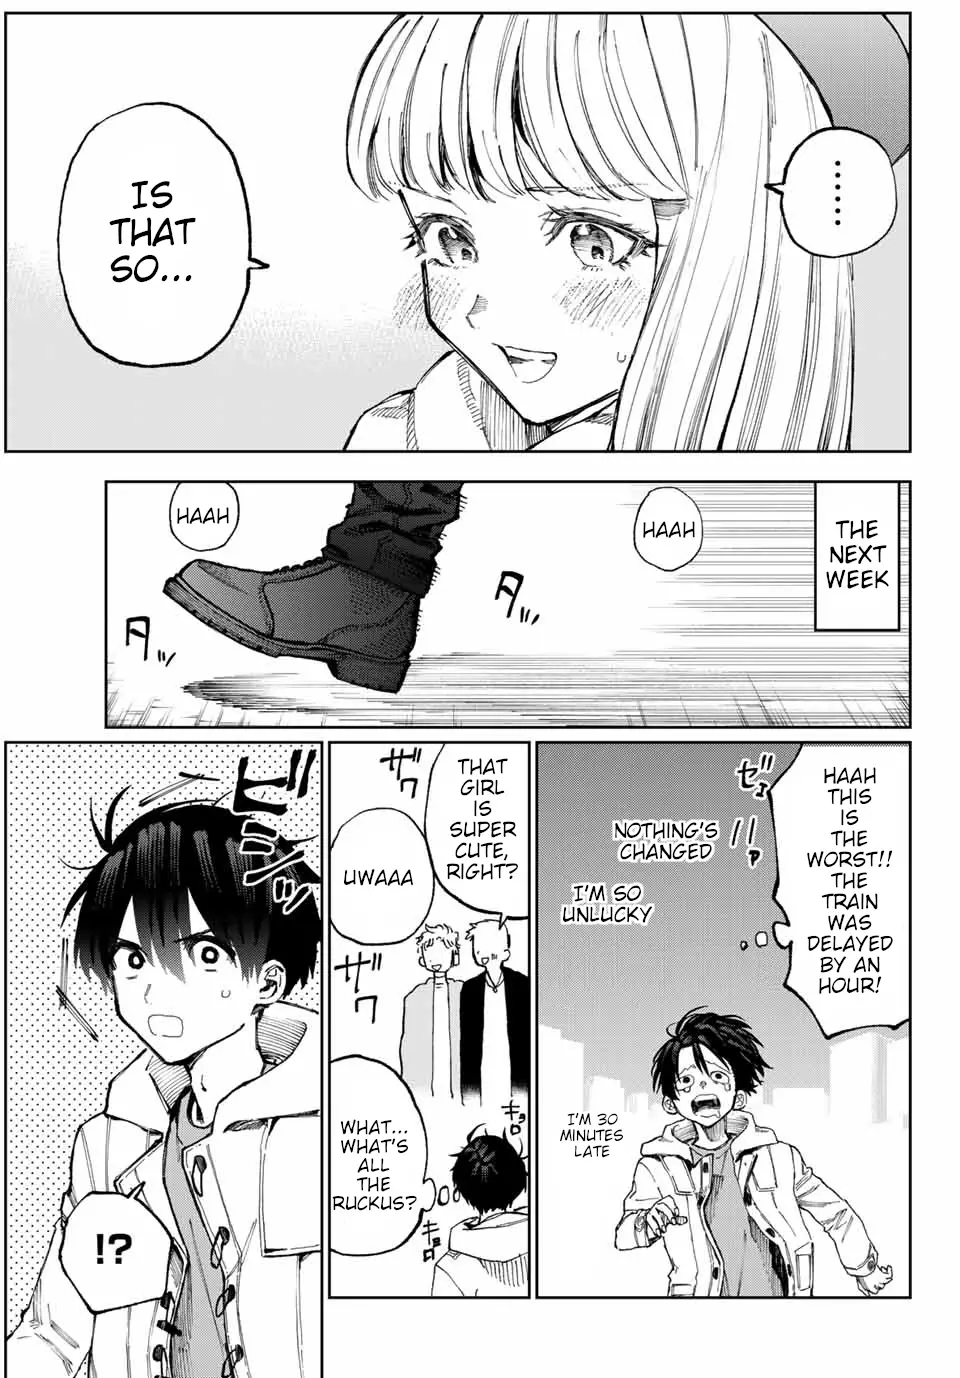 Shikimori's Not Just A Cutie - 12 page 4